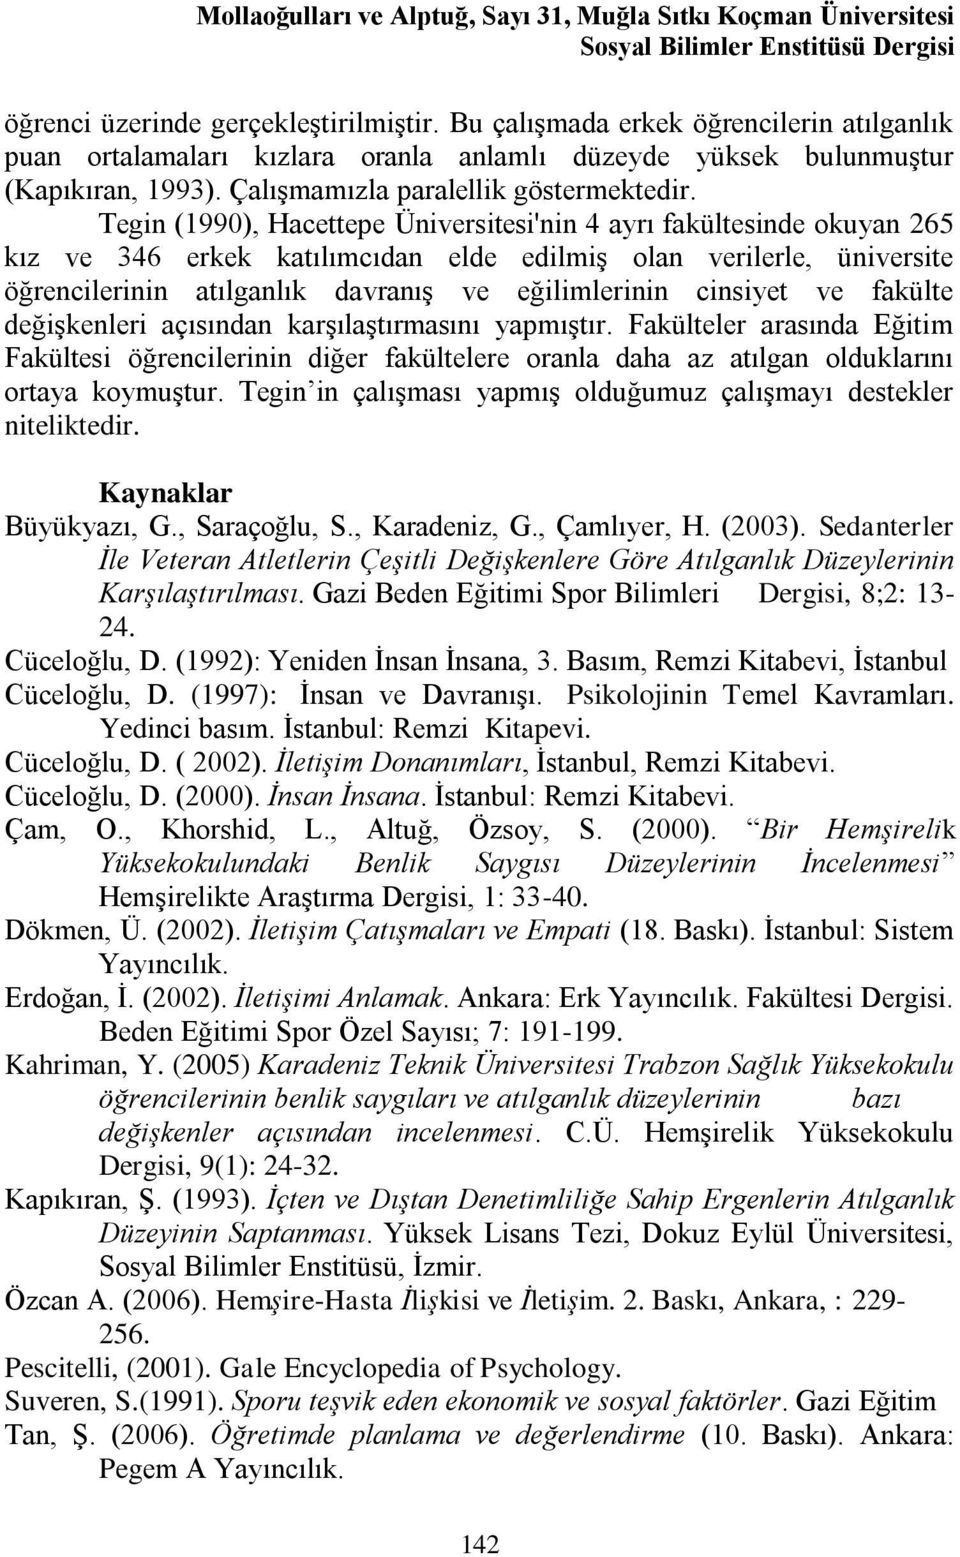 Tegin (1990), Hacettepe Üniversitesi'nin 4 ayrı fakültesinde okuyan 265 kız ve 346 erkek katılımcıdan elde edilmiş olan verilerle, üniversite öğrencilerinin atılganlık davranış ve eğilimlerinin